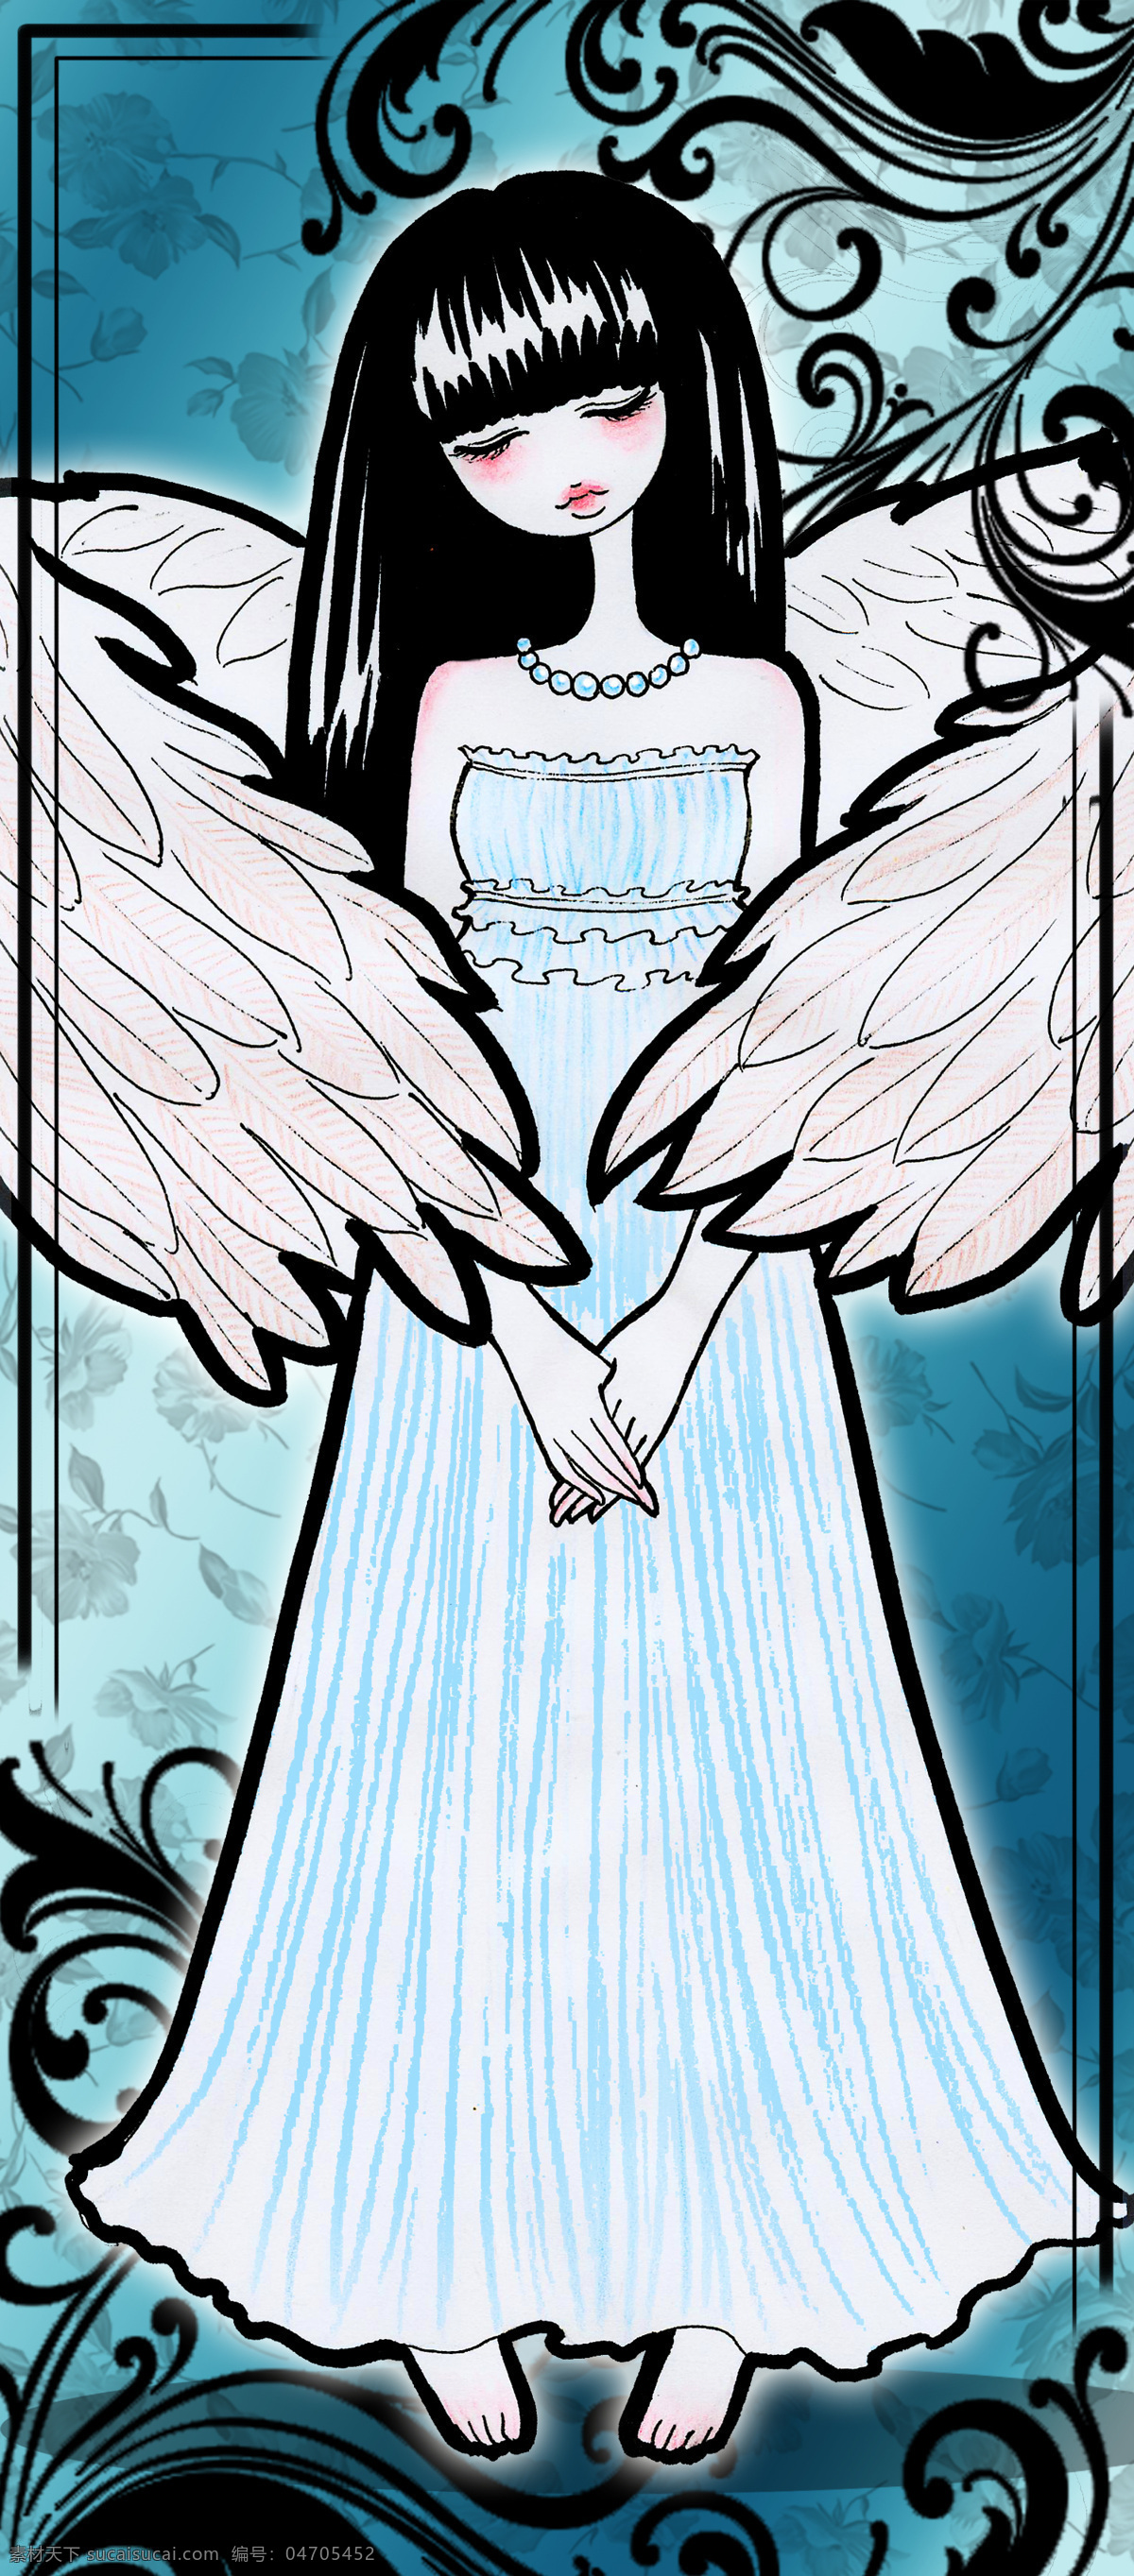 背景 翅膀 动漫动画 动漫人物 花纹 卡片 蓝色 漫画 天使 设计素材 模板下载 蓝色天使 女孩 羽毛 唯美